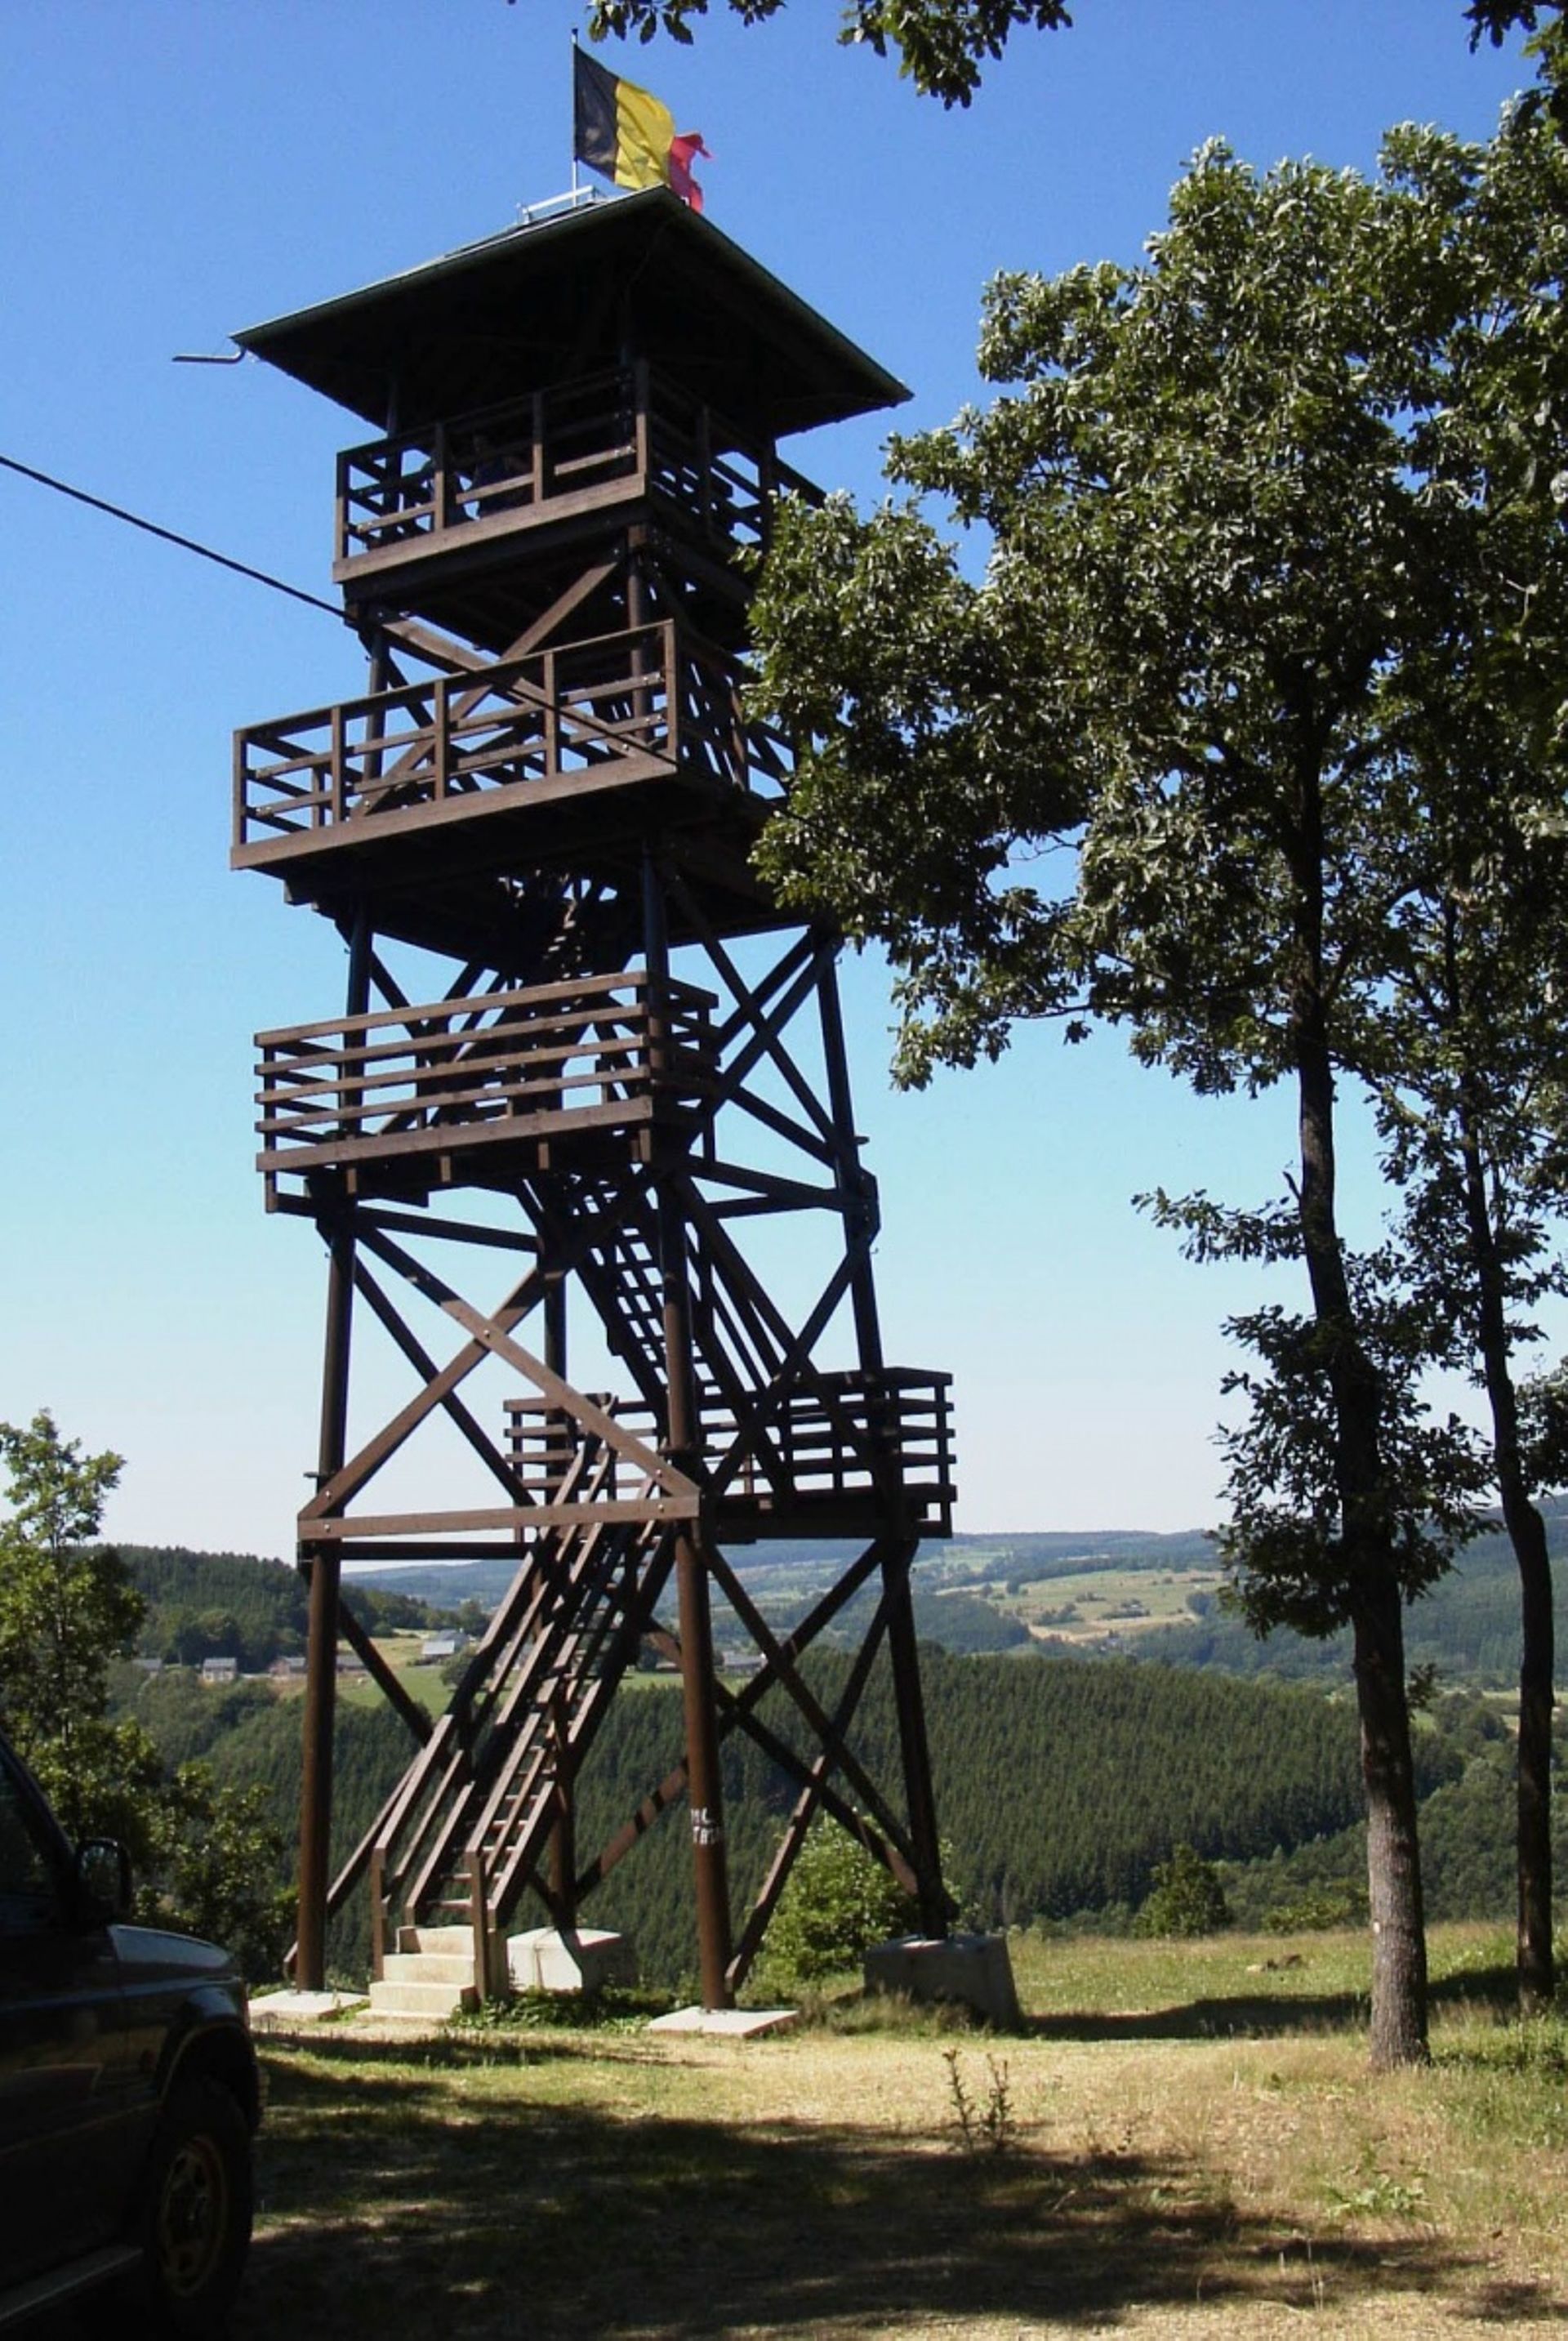 Profitez d’une vue imprenable sur la région en montant au sommet de la tour Leroux. Pour la mériter, il faut grimper 65 marches !